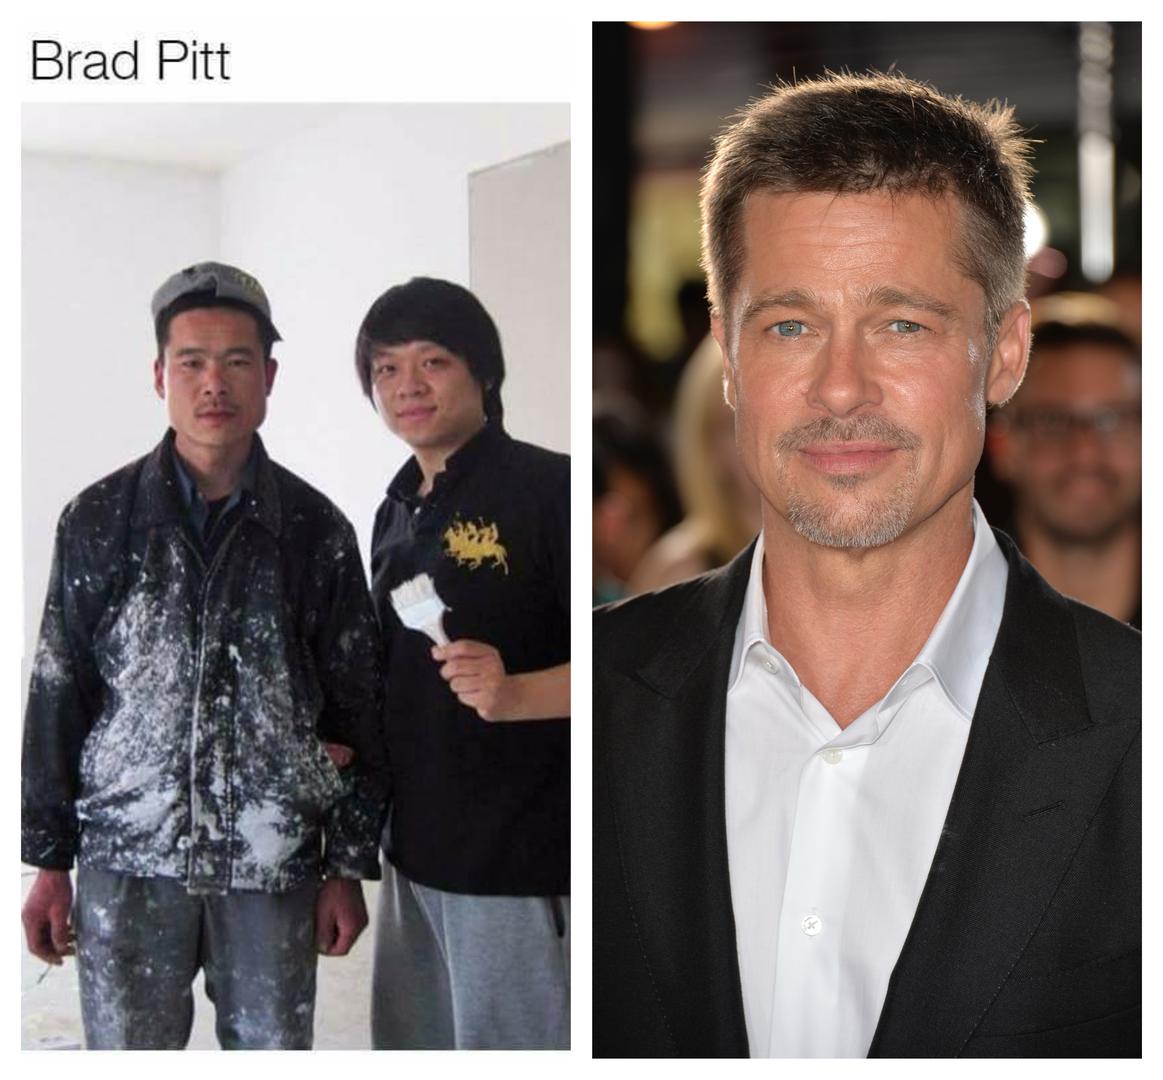 Azijski Brad Pitt